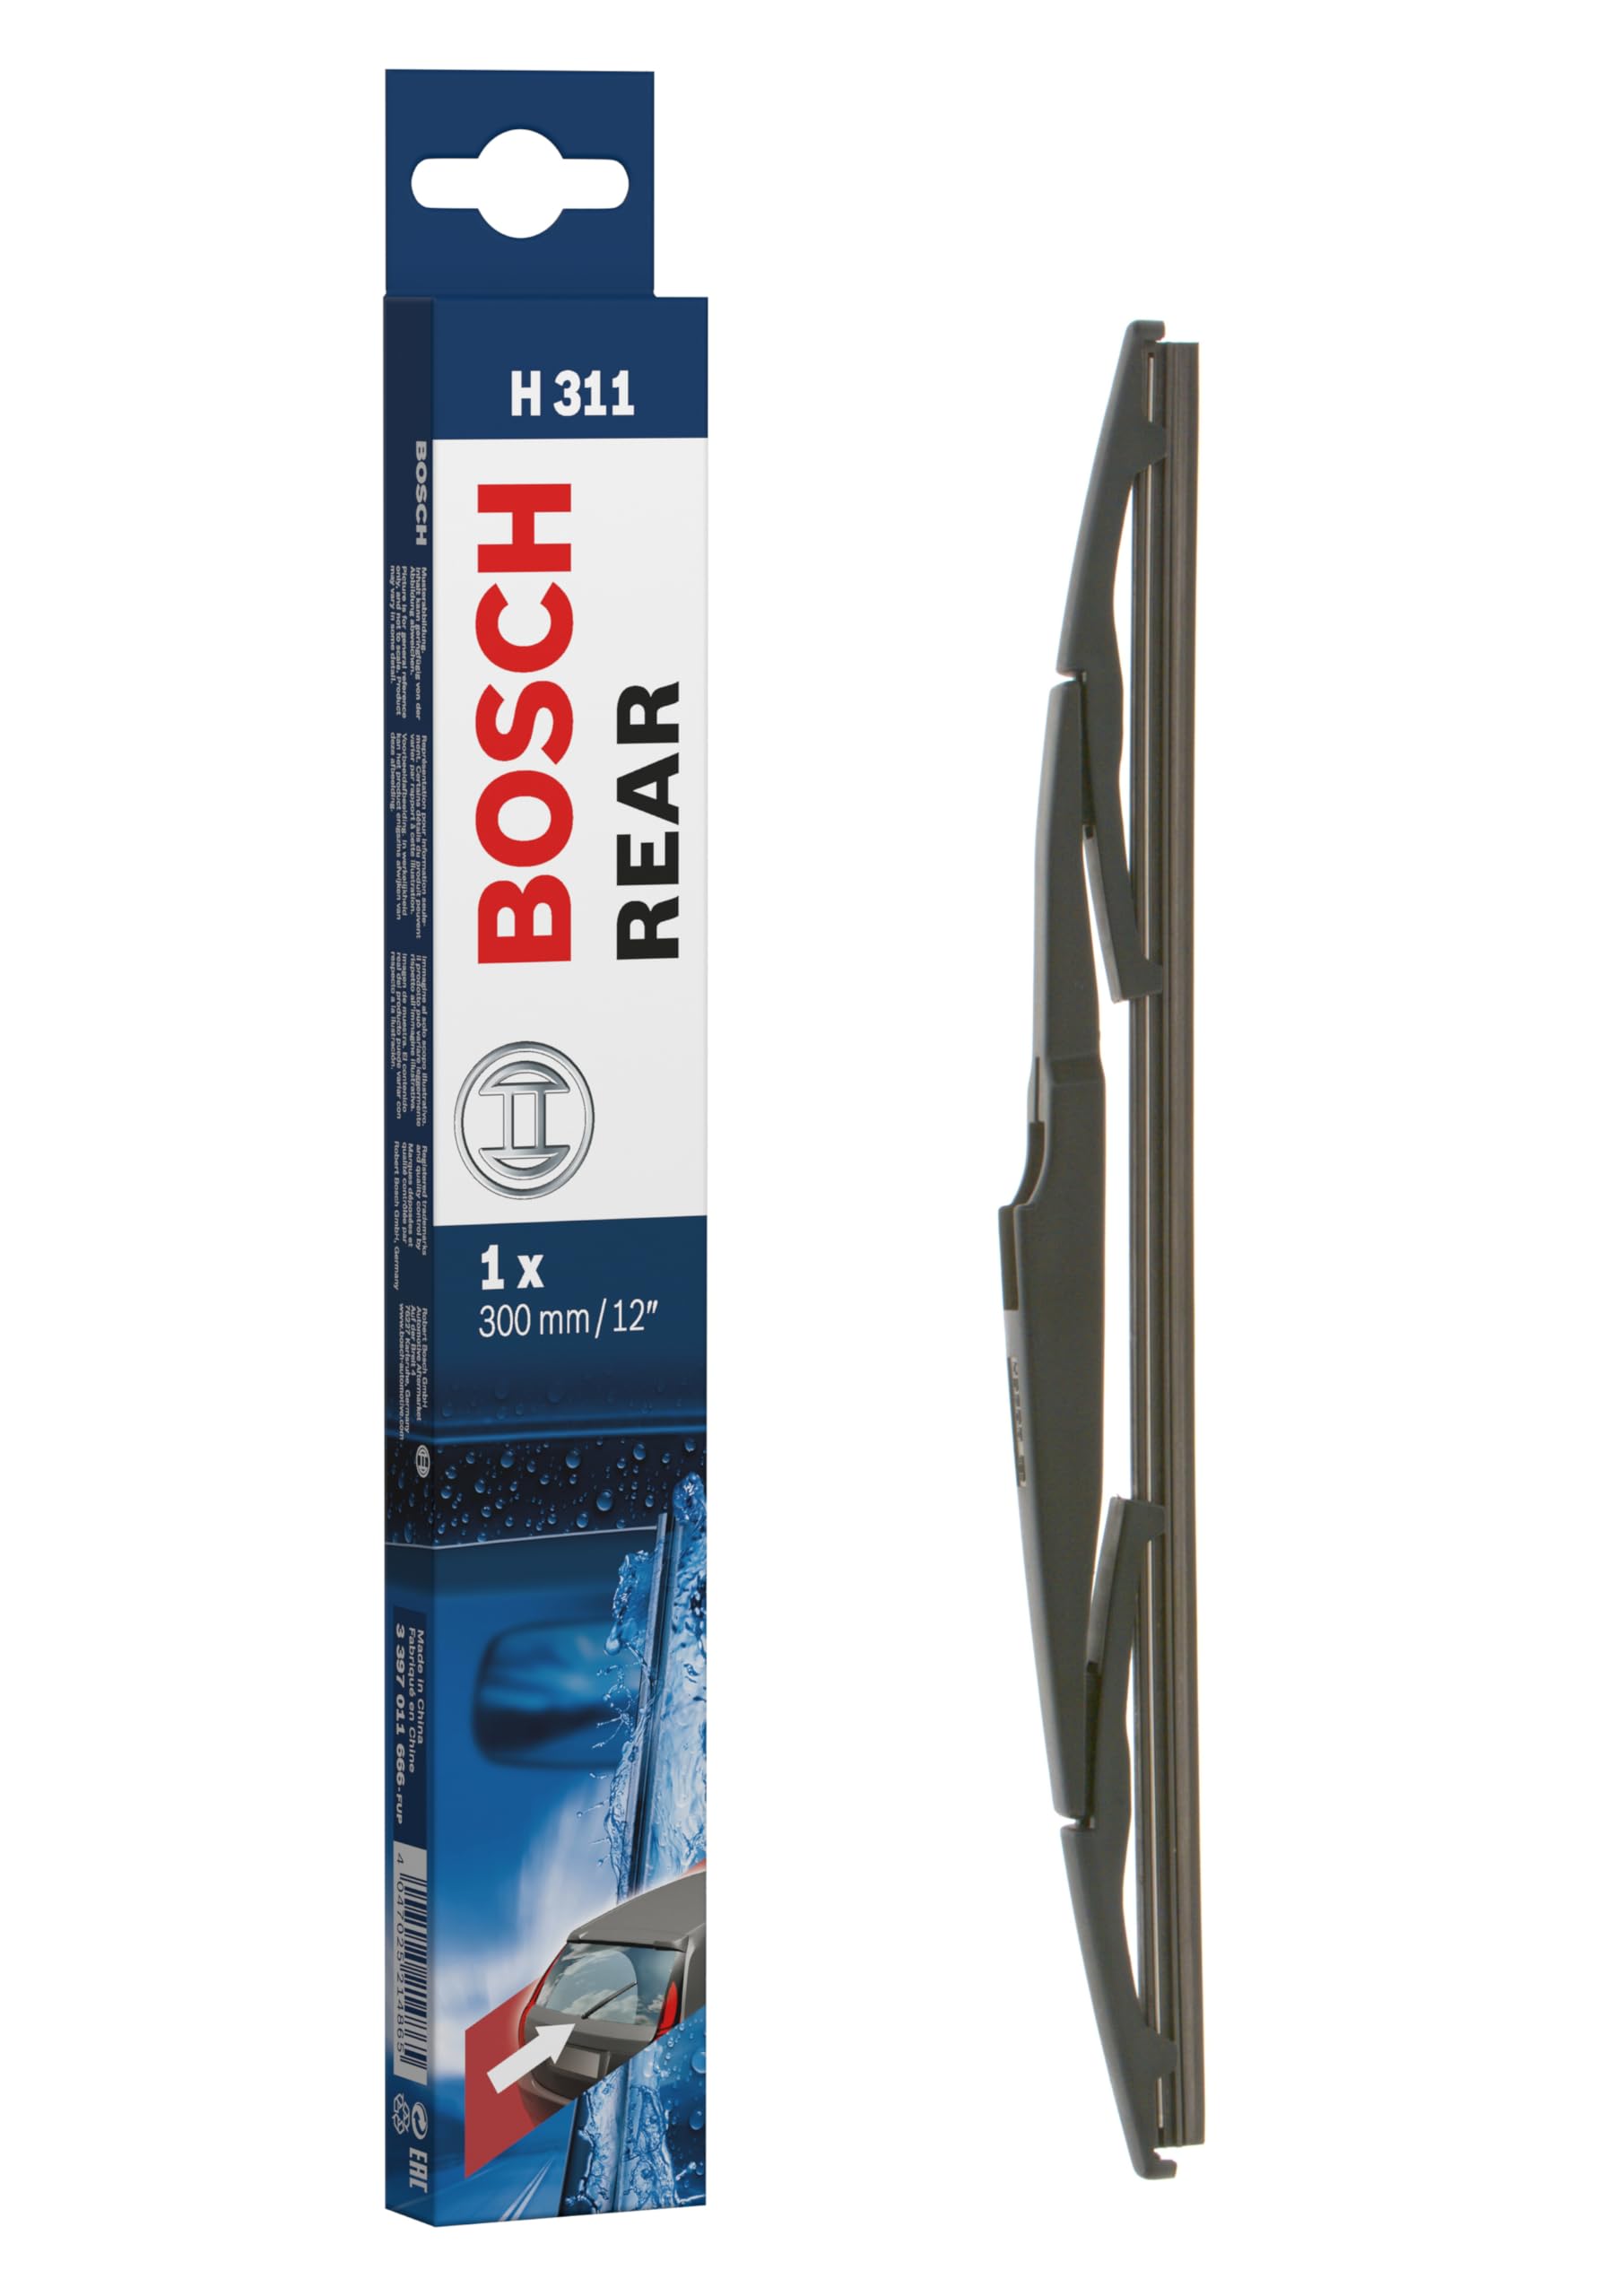 Bosch Scheibenwischer Rear H311, Länge: 300mm – Scheibenwischer für Heckscheibe von Bosch Automotive